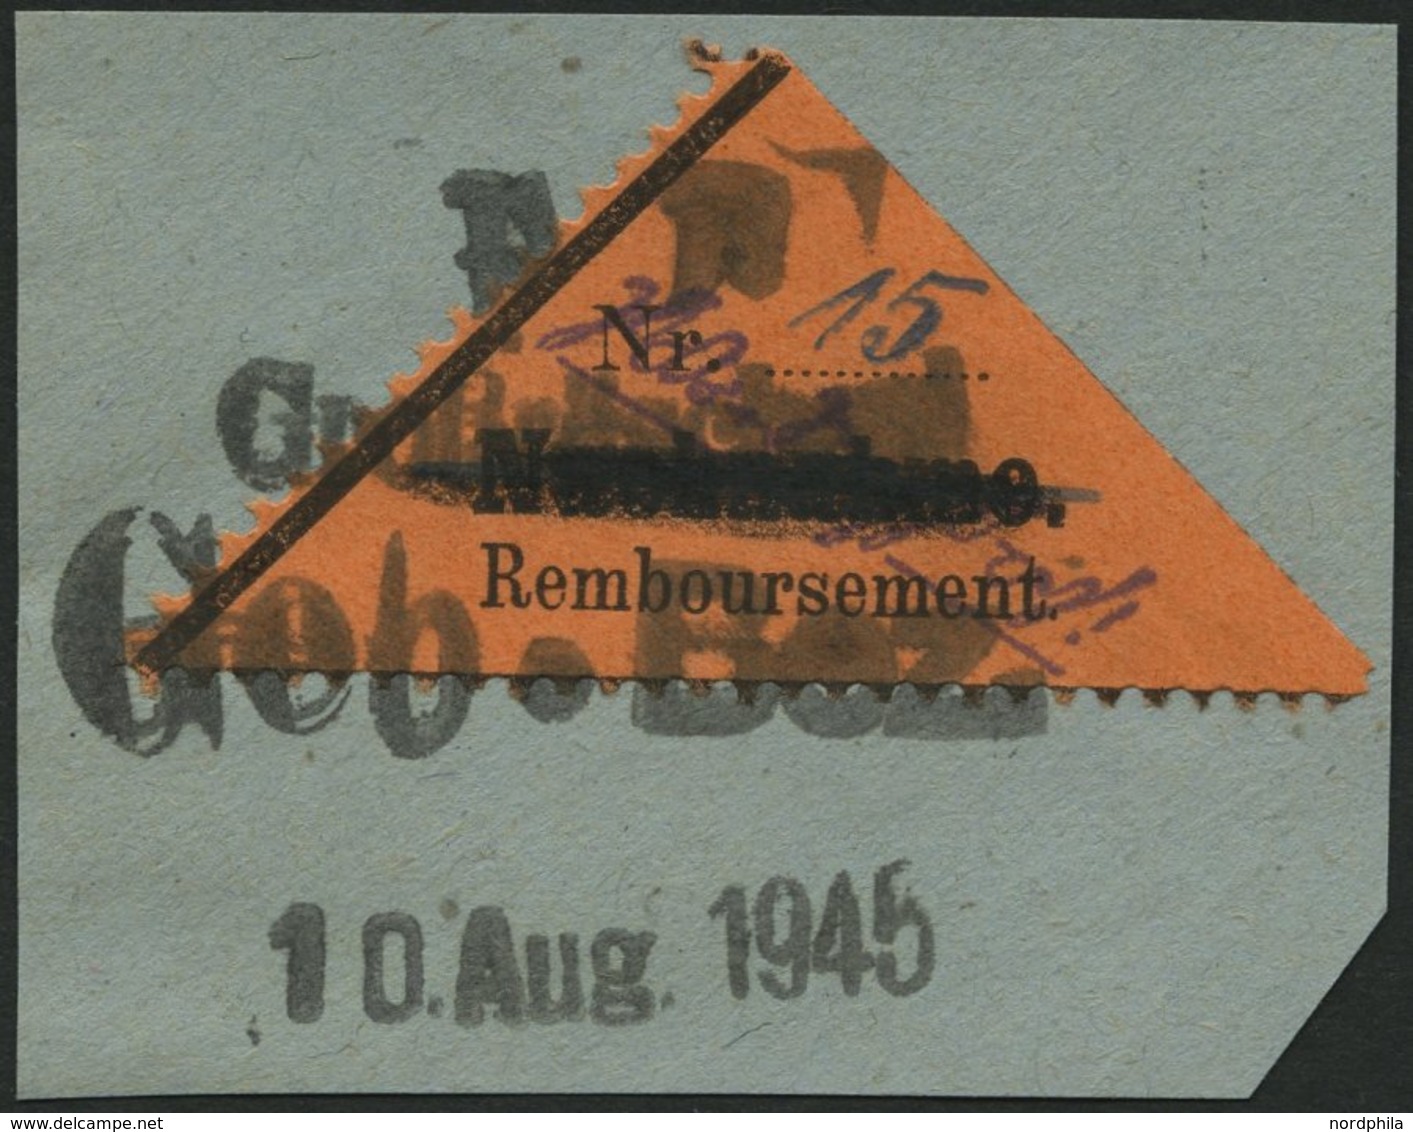 GROSSRÄSCHEN-VORLÄUFER V 2AI BrfStk, 1945, 15 Pf. Schwarz Auf Bräunlichrot, Nachnahme In Antiqua, Prachtbriefstück, Gepr - Private & Local Mails